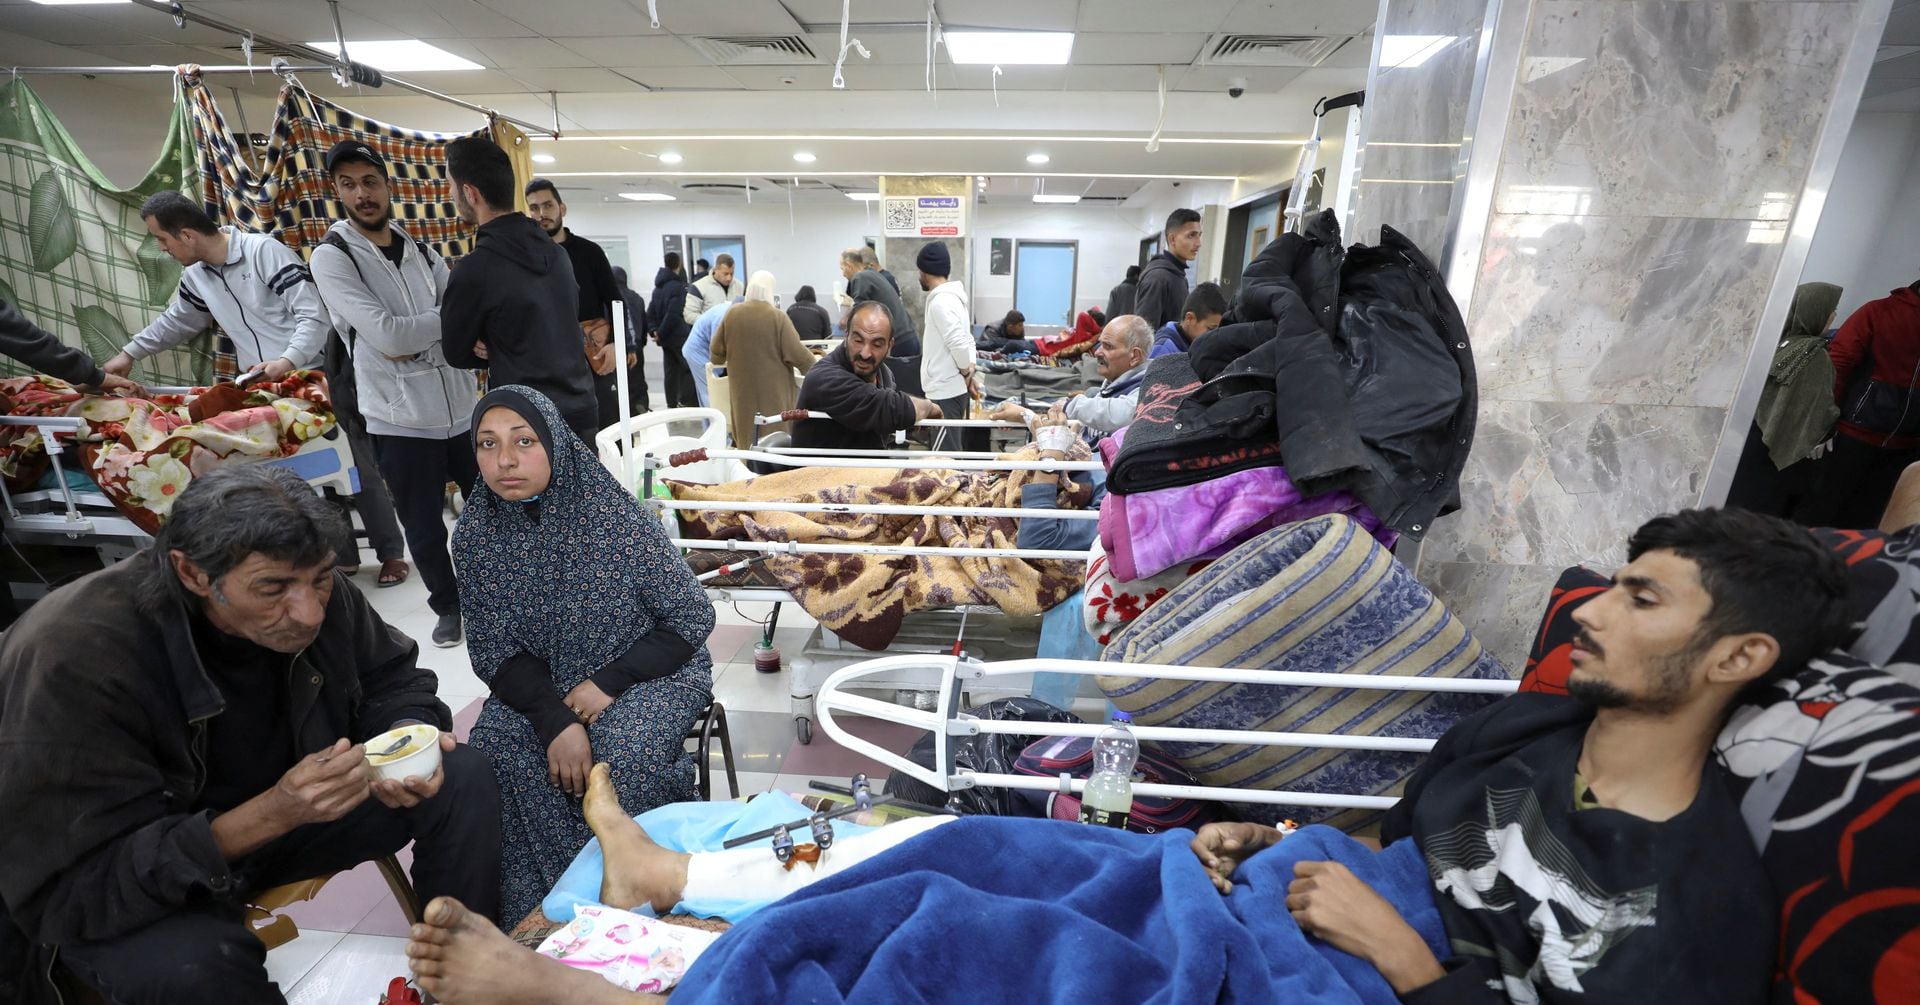 ガザ援助待ち市民犠牲、大半は圧死 イスラエル軍が予備調査